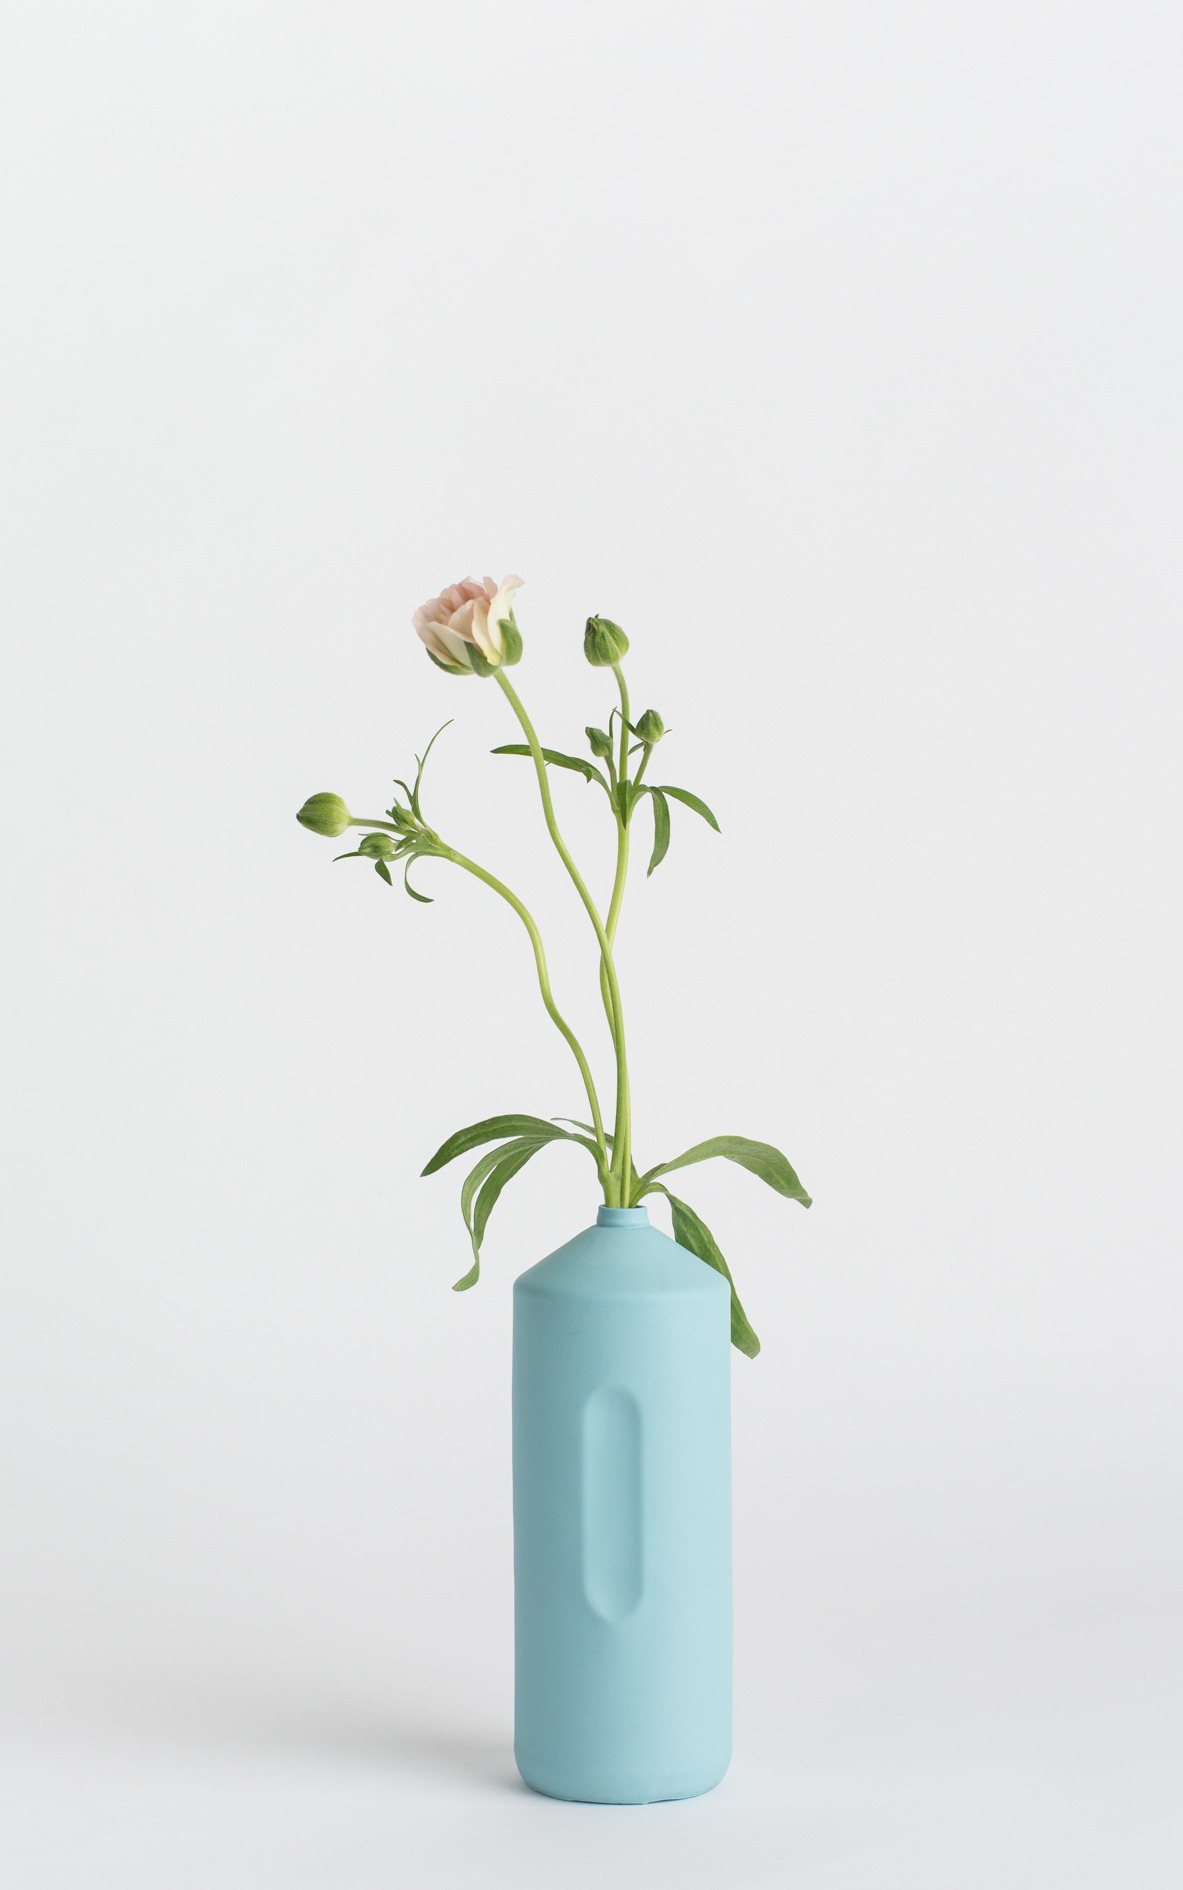 bottle vase #2 light blue with flower